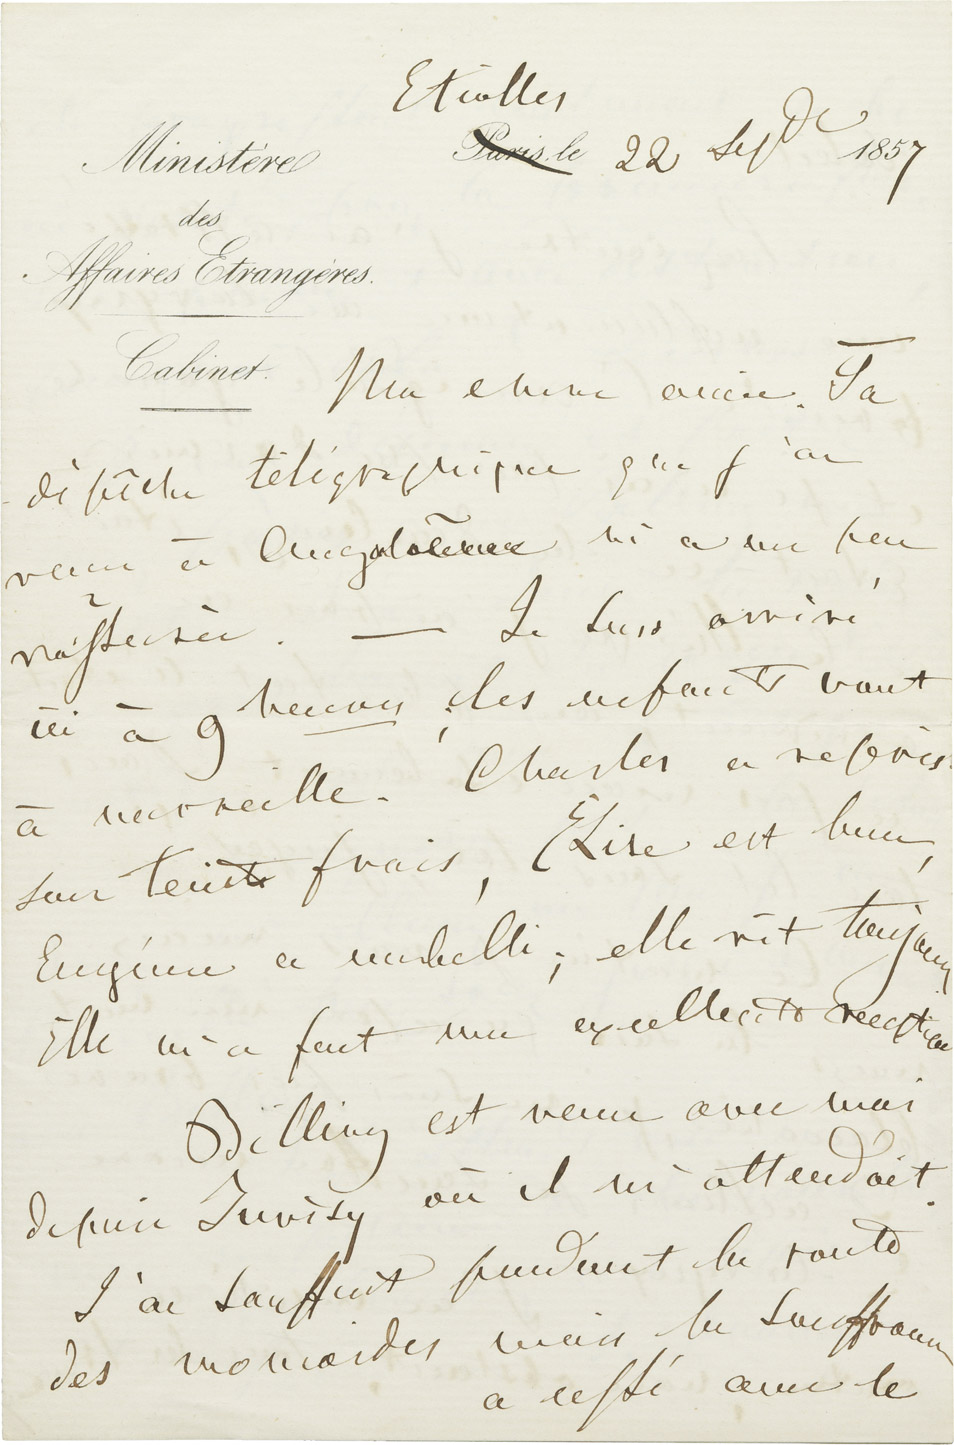 Lettre d'Alexandre I Colonna Walewski - Patrimoine Charles-André COLONNA WALEWSKI, en ligne directe de Napoléon